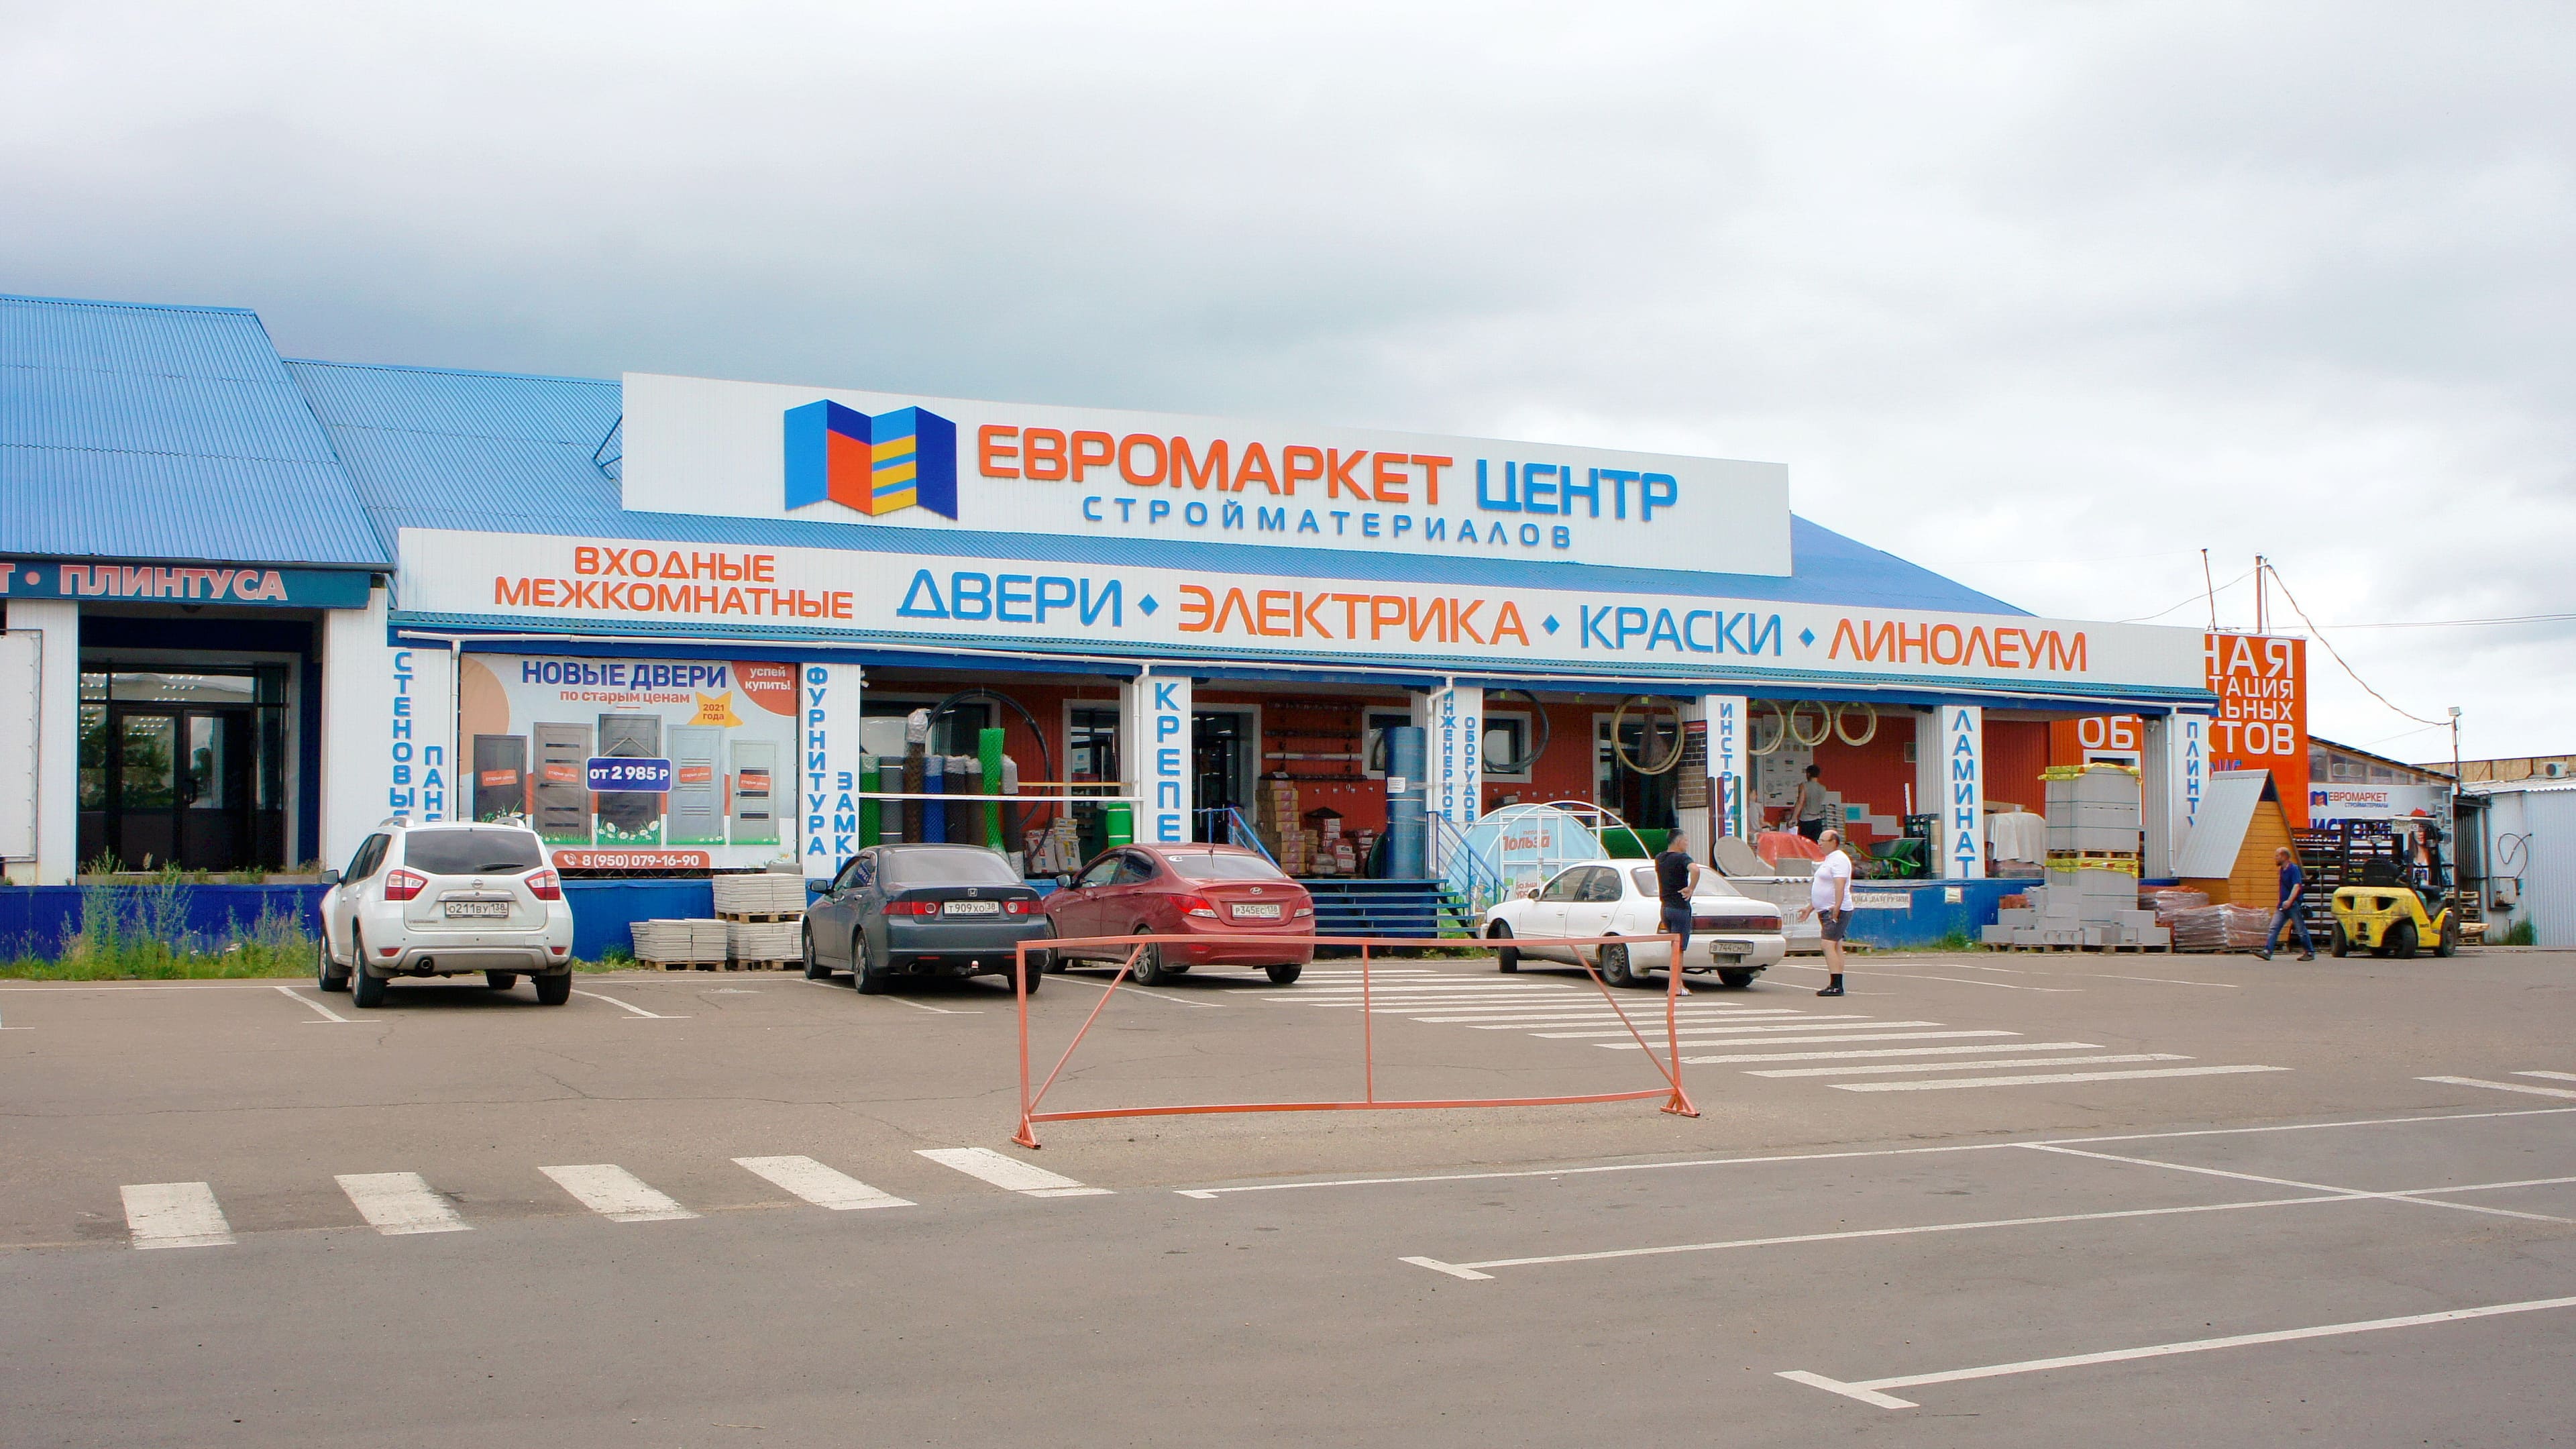 Группа компаний «ЕвроМаркет» в Ангарске - товары для строительства и ремонта, расходные материалы, крепеж, фурнитура